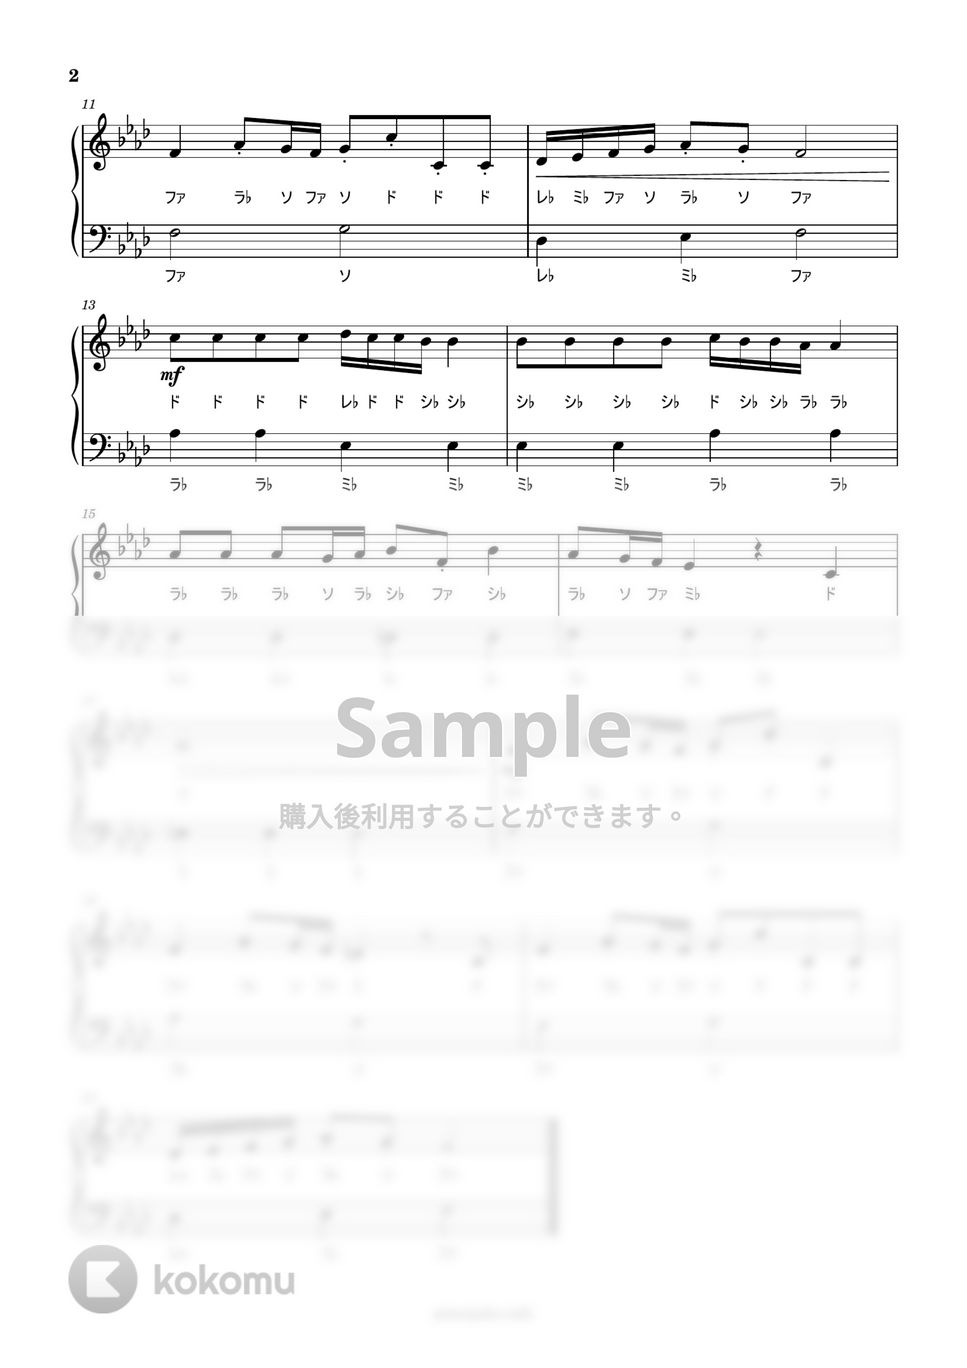 久石譲 - ナウシカ・レクイエム (ドレミ付き簡単楽譜) by ピアノ塾